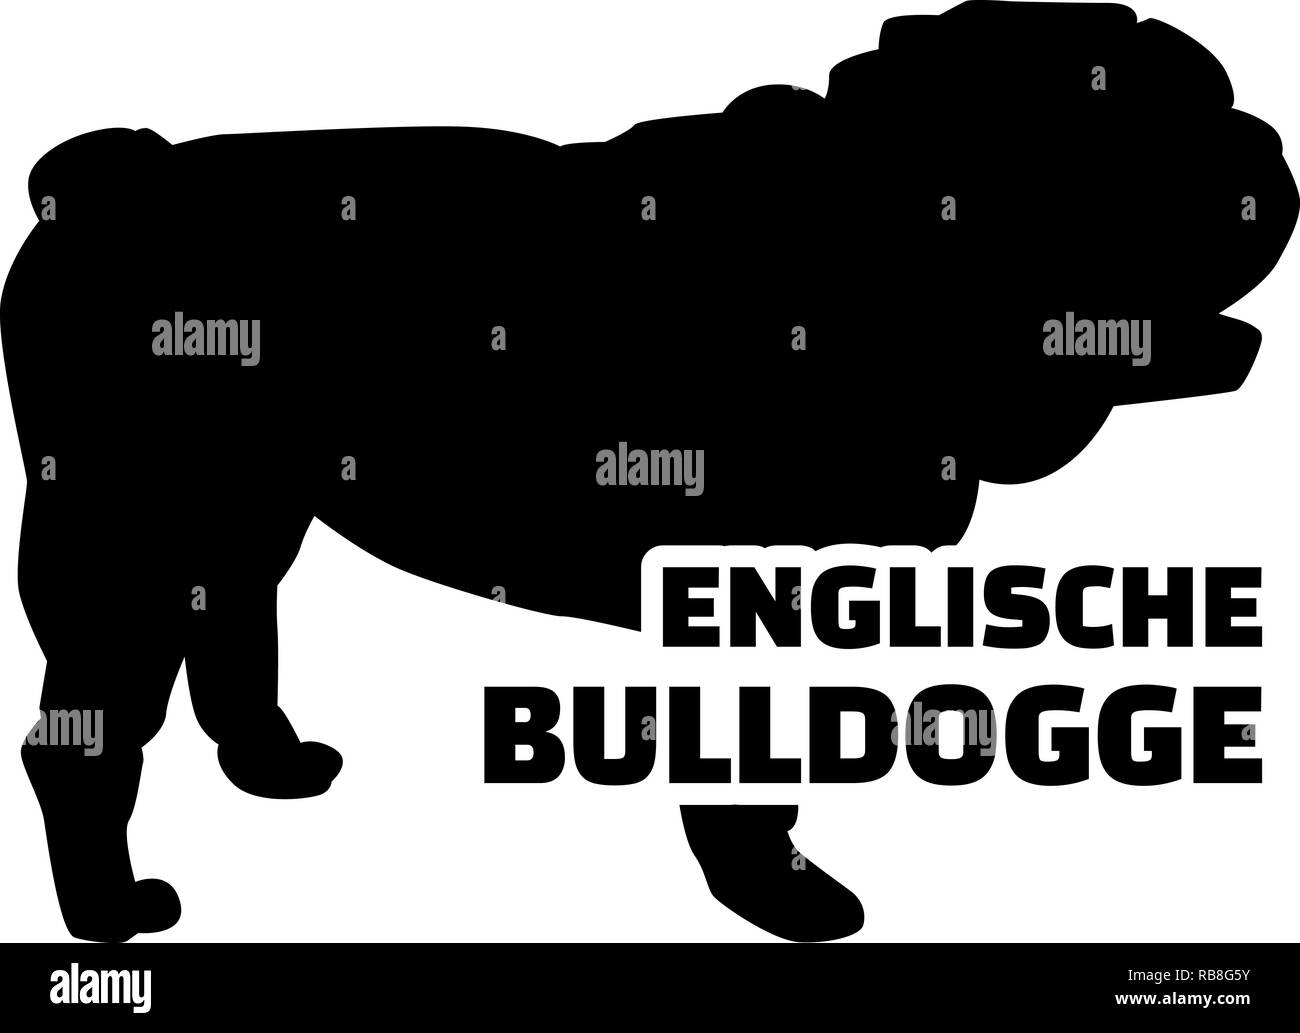 English Bulldog silhouette in german Stock Photo